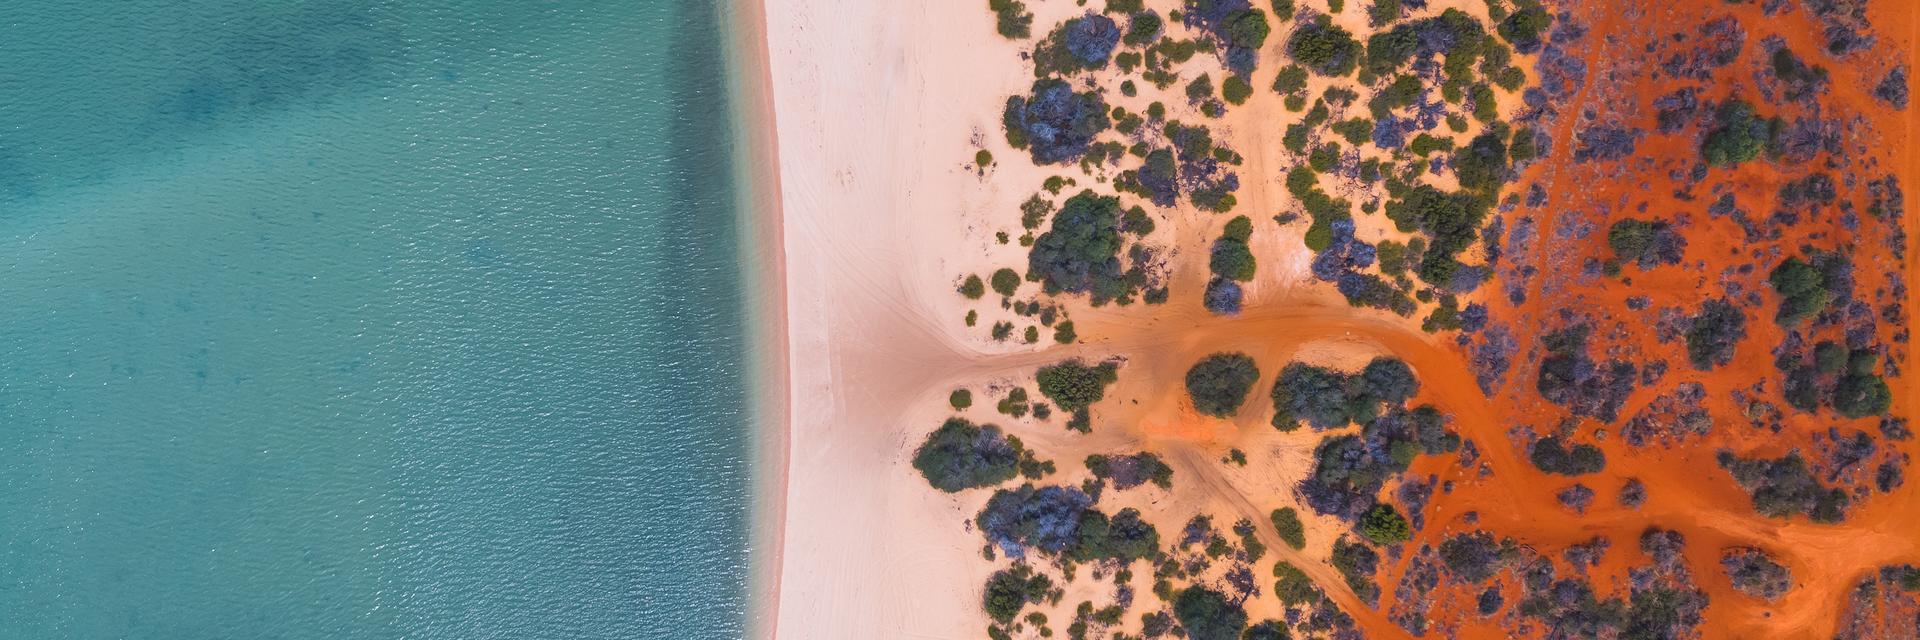 Luftaufnahme eines Strandes in Australien. Durch die Färbung des Wassers und der Wüste, ähnelt die Aufnahme Klimastreifen.